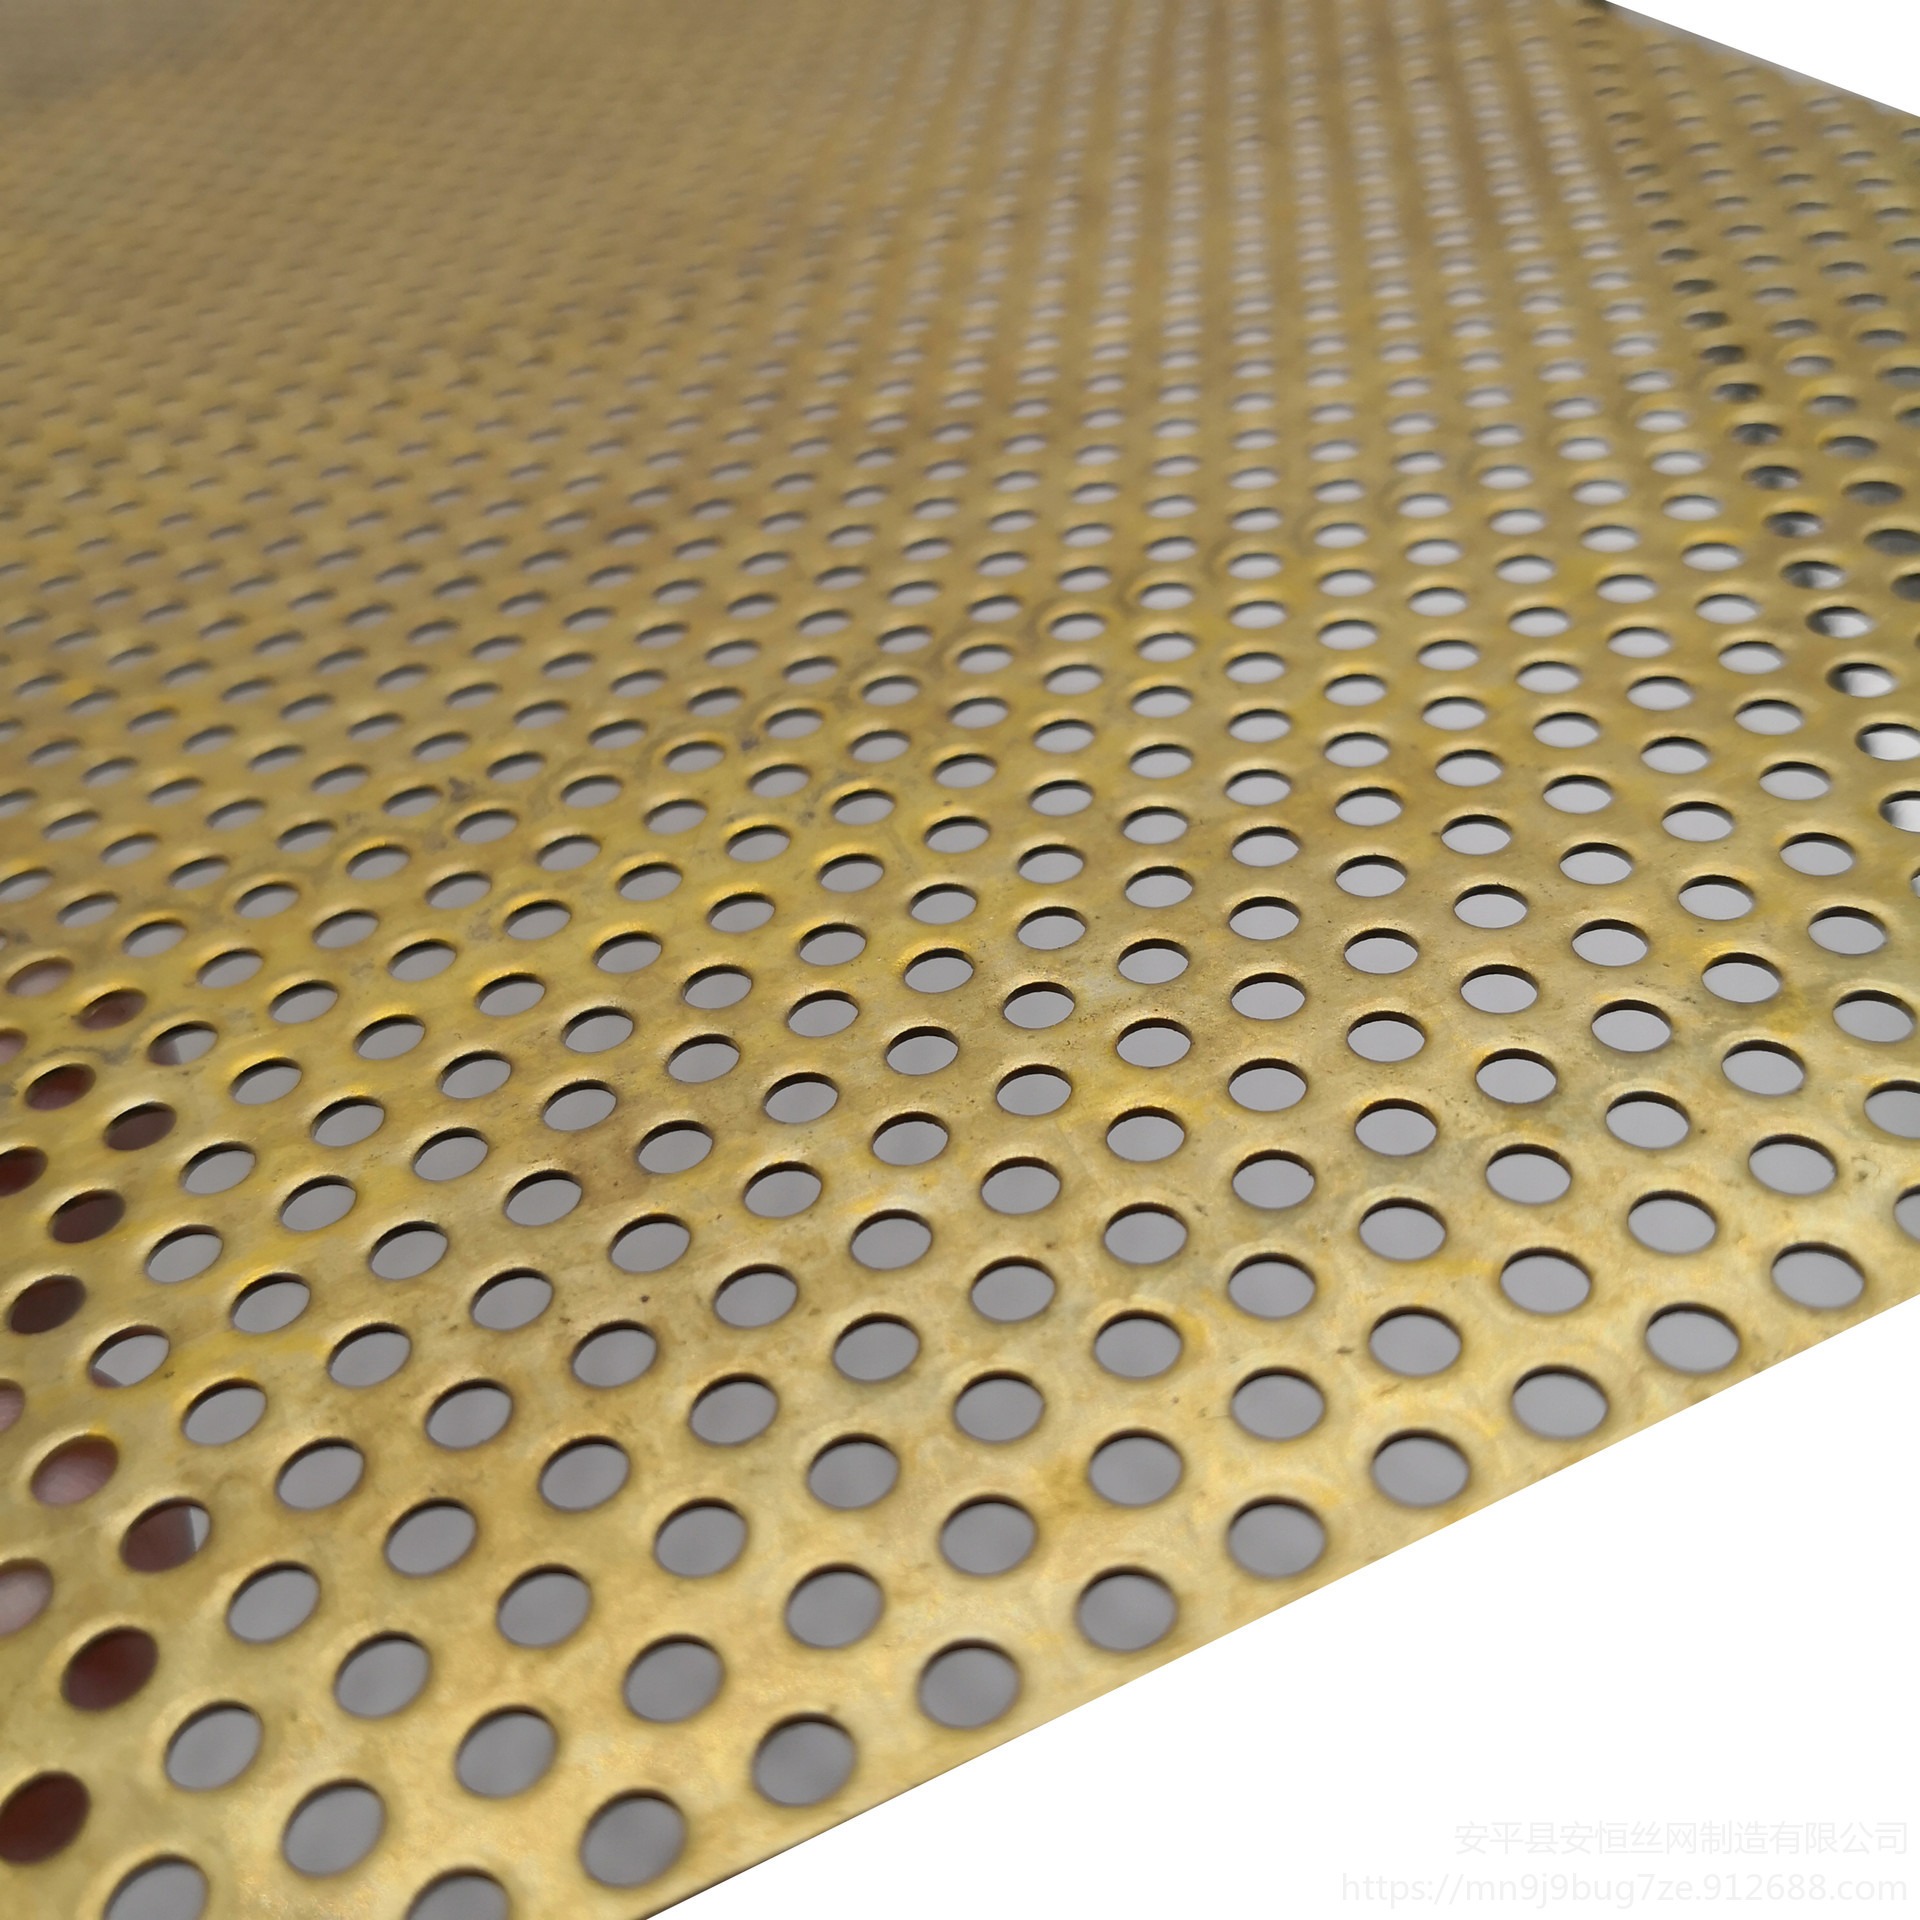 0.15mm厚黄铜板圆孔网孔径3mm孔边距5mm 黄铜板冲孔网 电子散热用铜板网 安恒图片